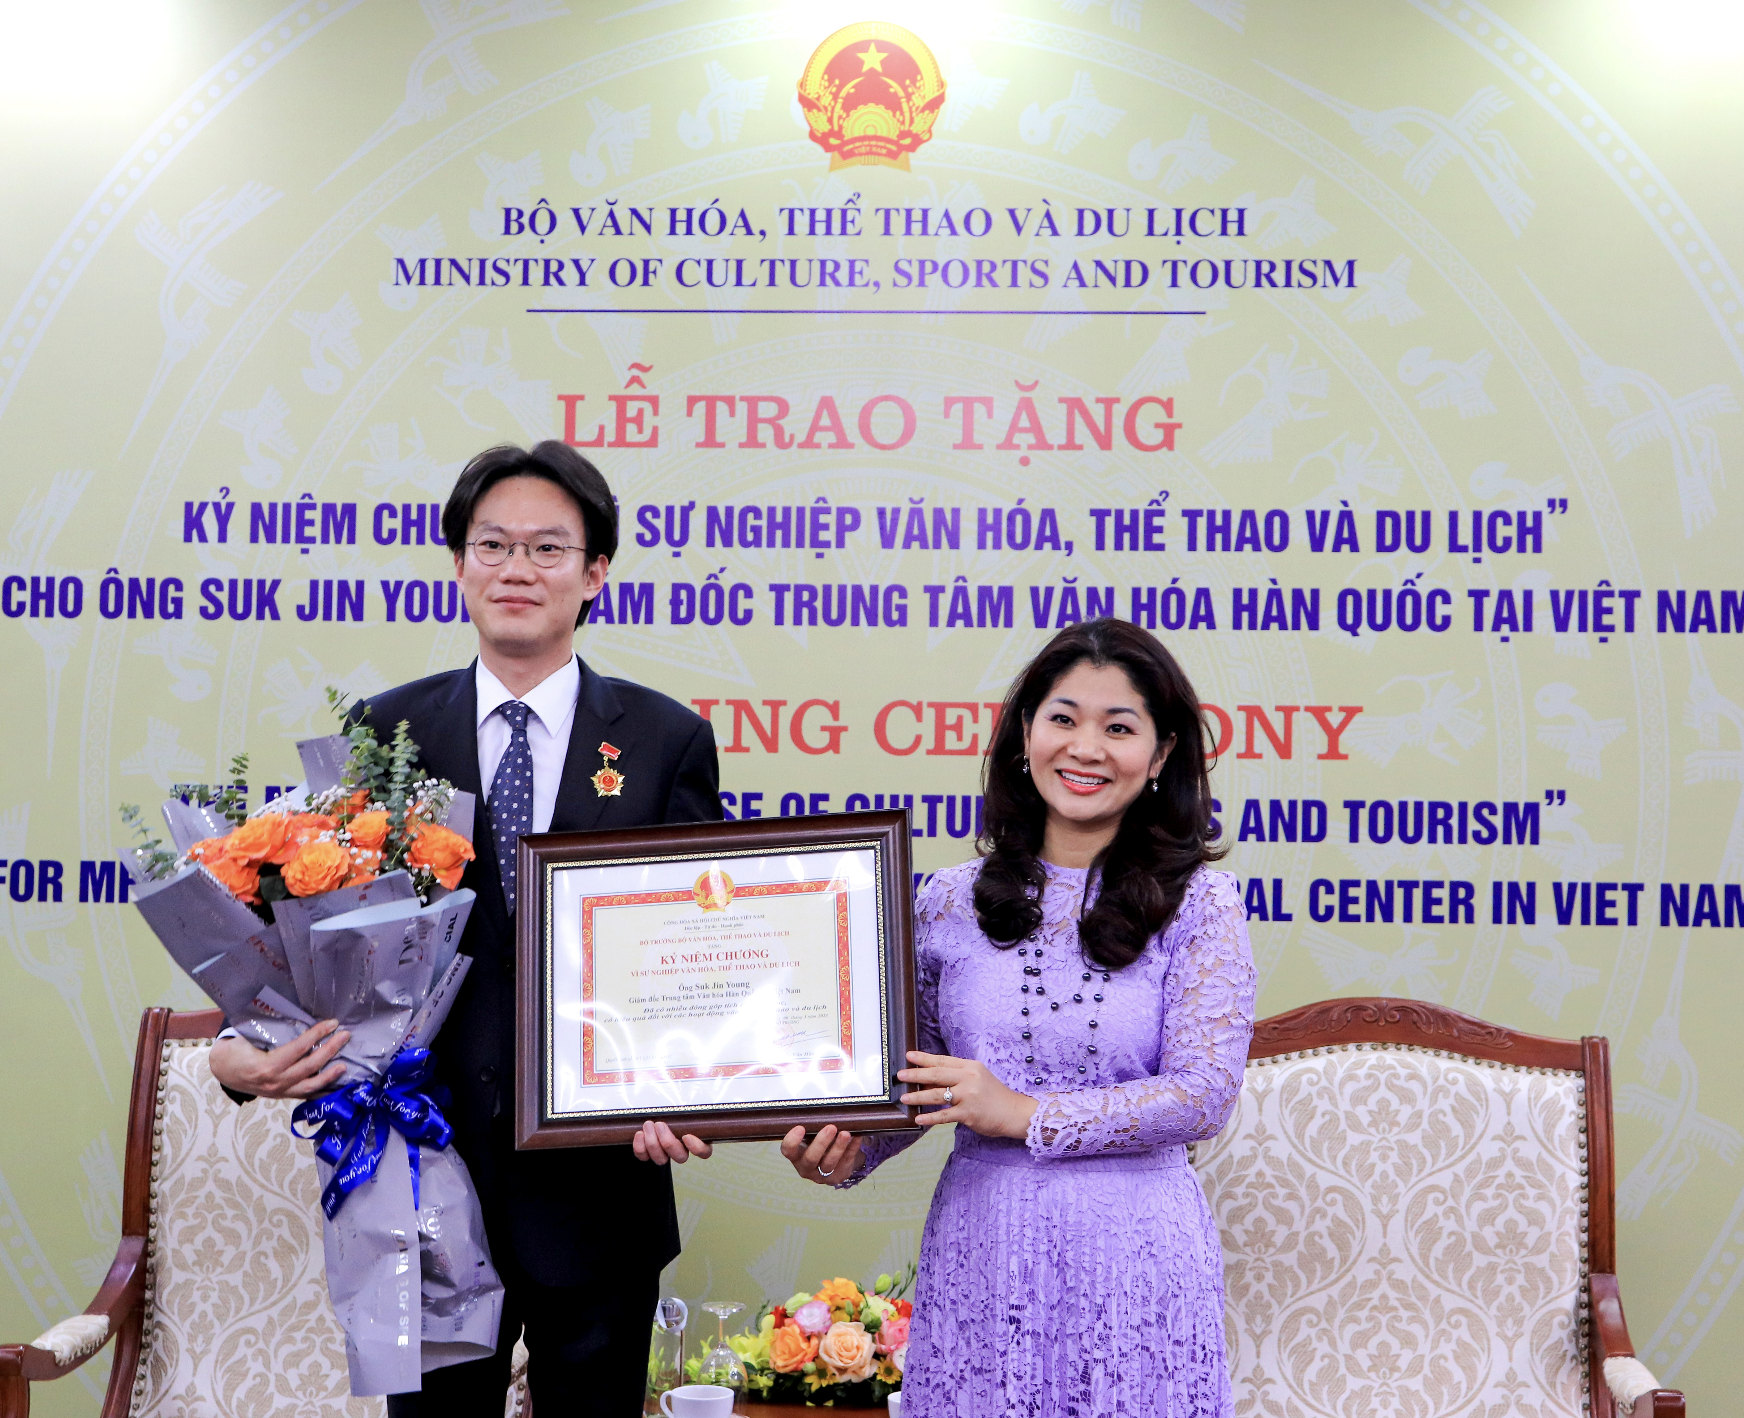 Giám đốc Trung tâm Văn hóa Hàn Quốc tại Việt Nam nhận Kỷ niệm chương “Vì sự nghiệp Văn hóa, Thể thao và Du lịch”